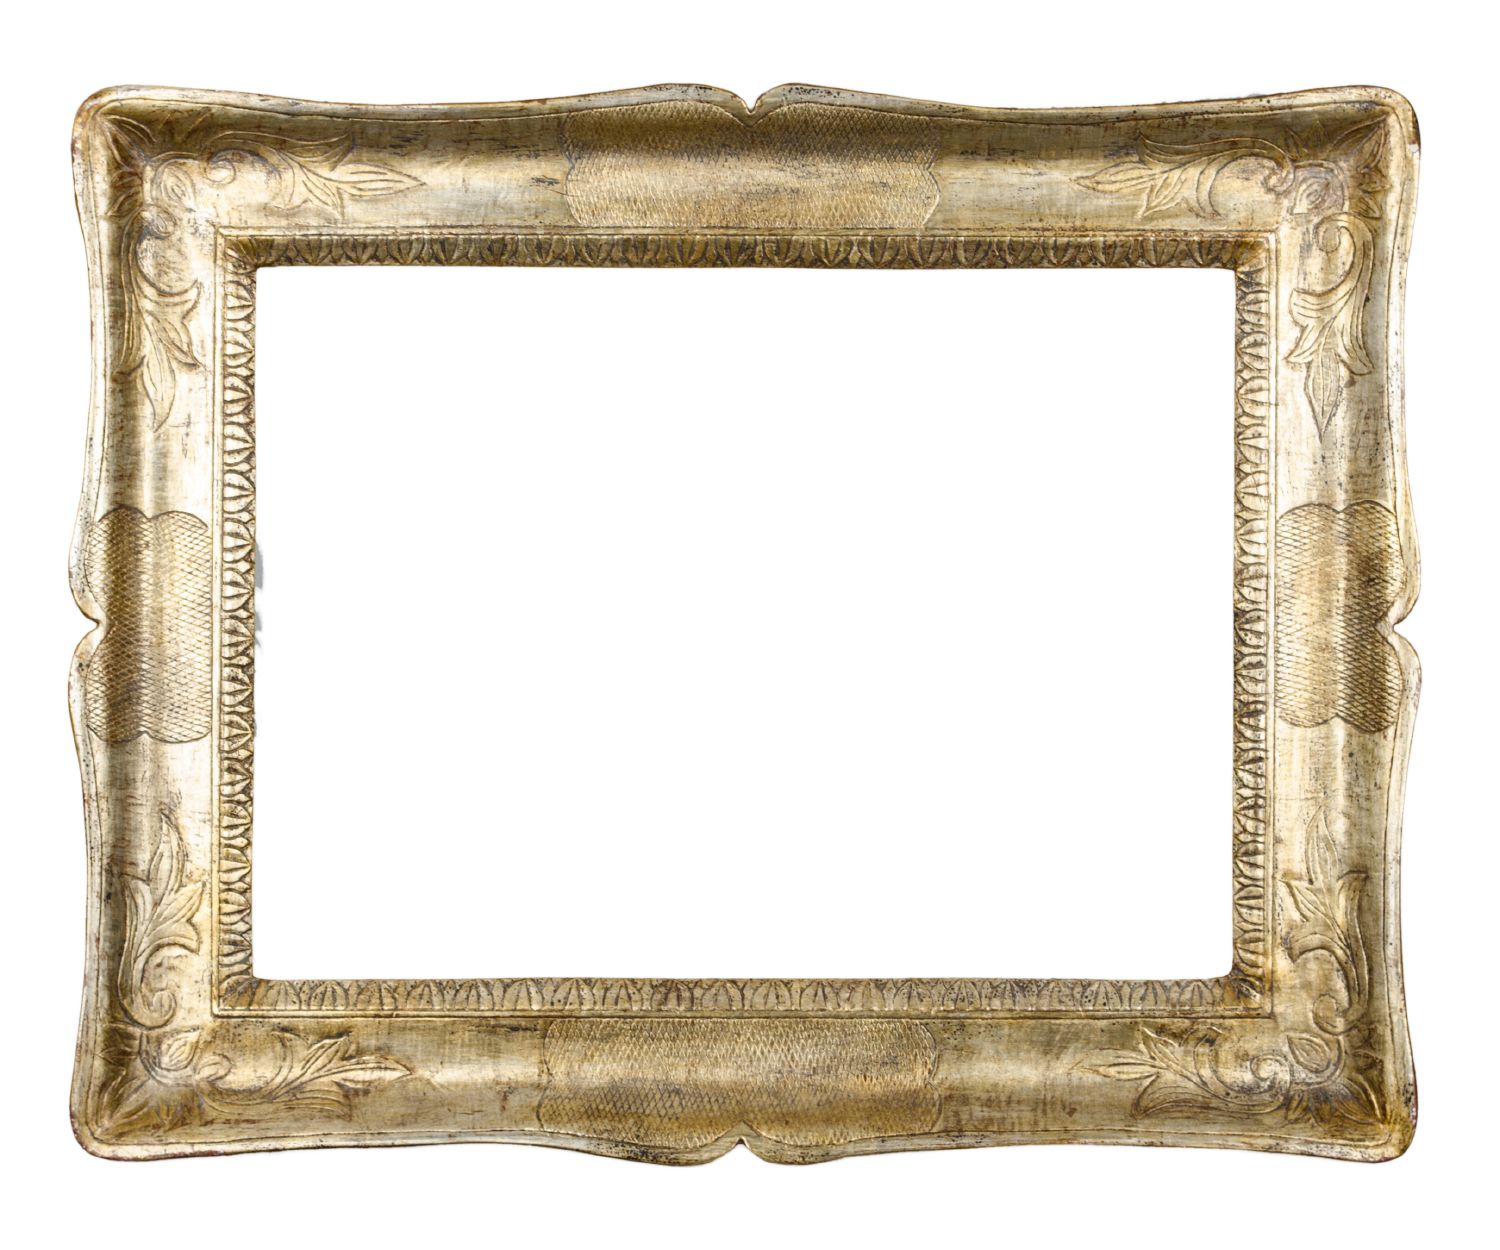 CORNICE a guantiera in legno dorato ad argento a mecca (cm 56 x 41). Sicilia fine '800 Misure: cm 59